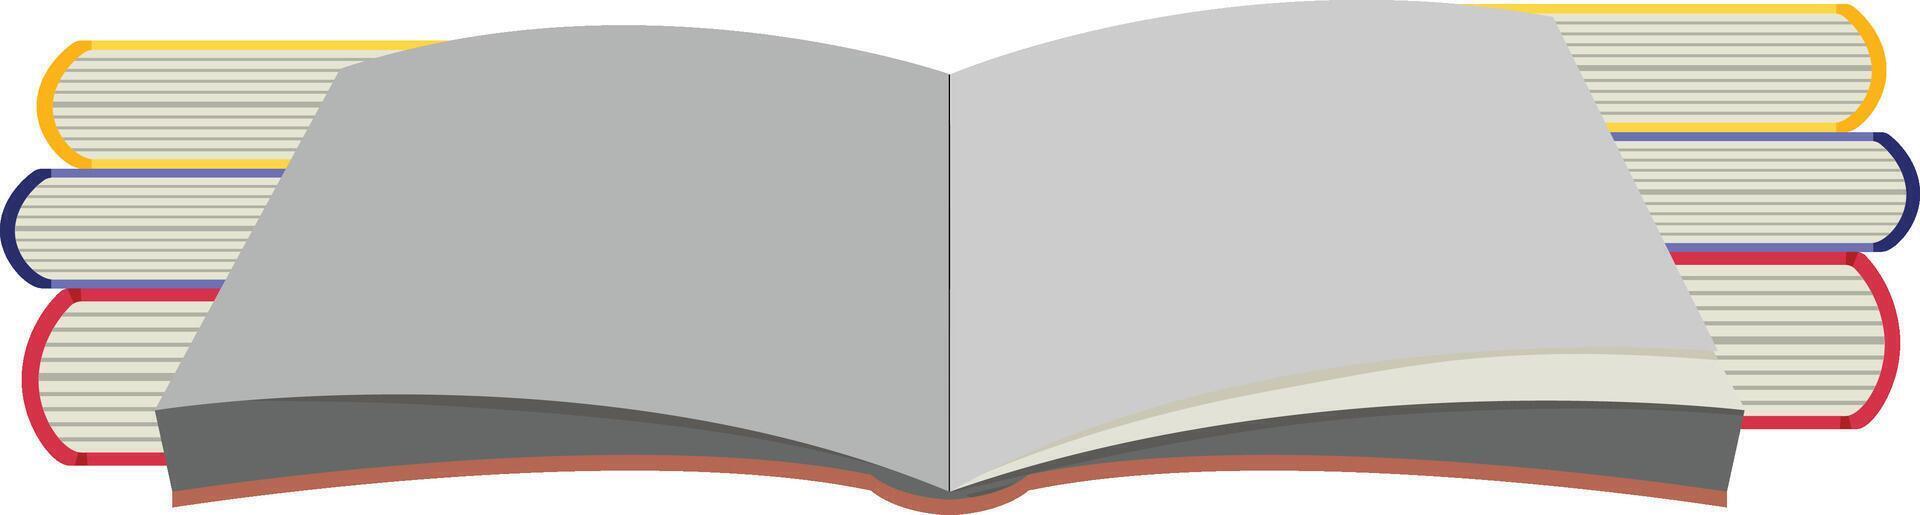 libro abierto con marcador vector